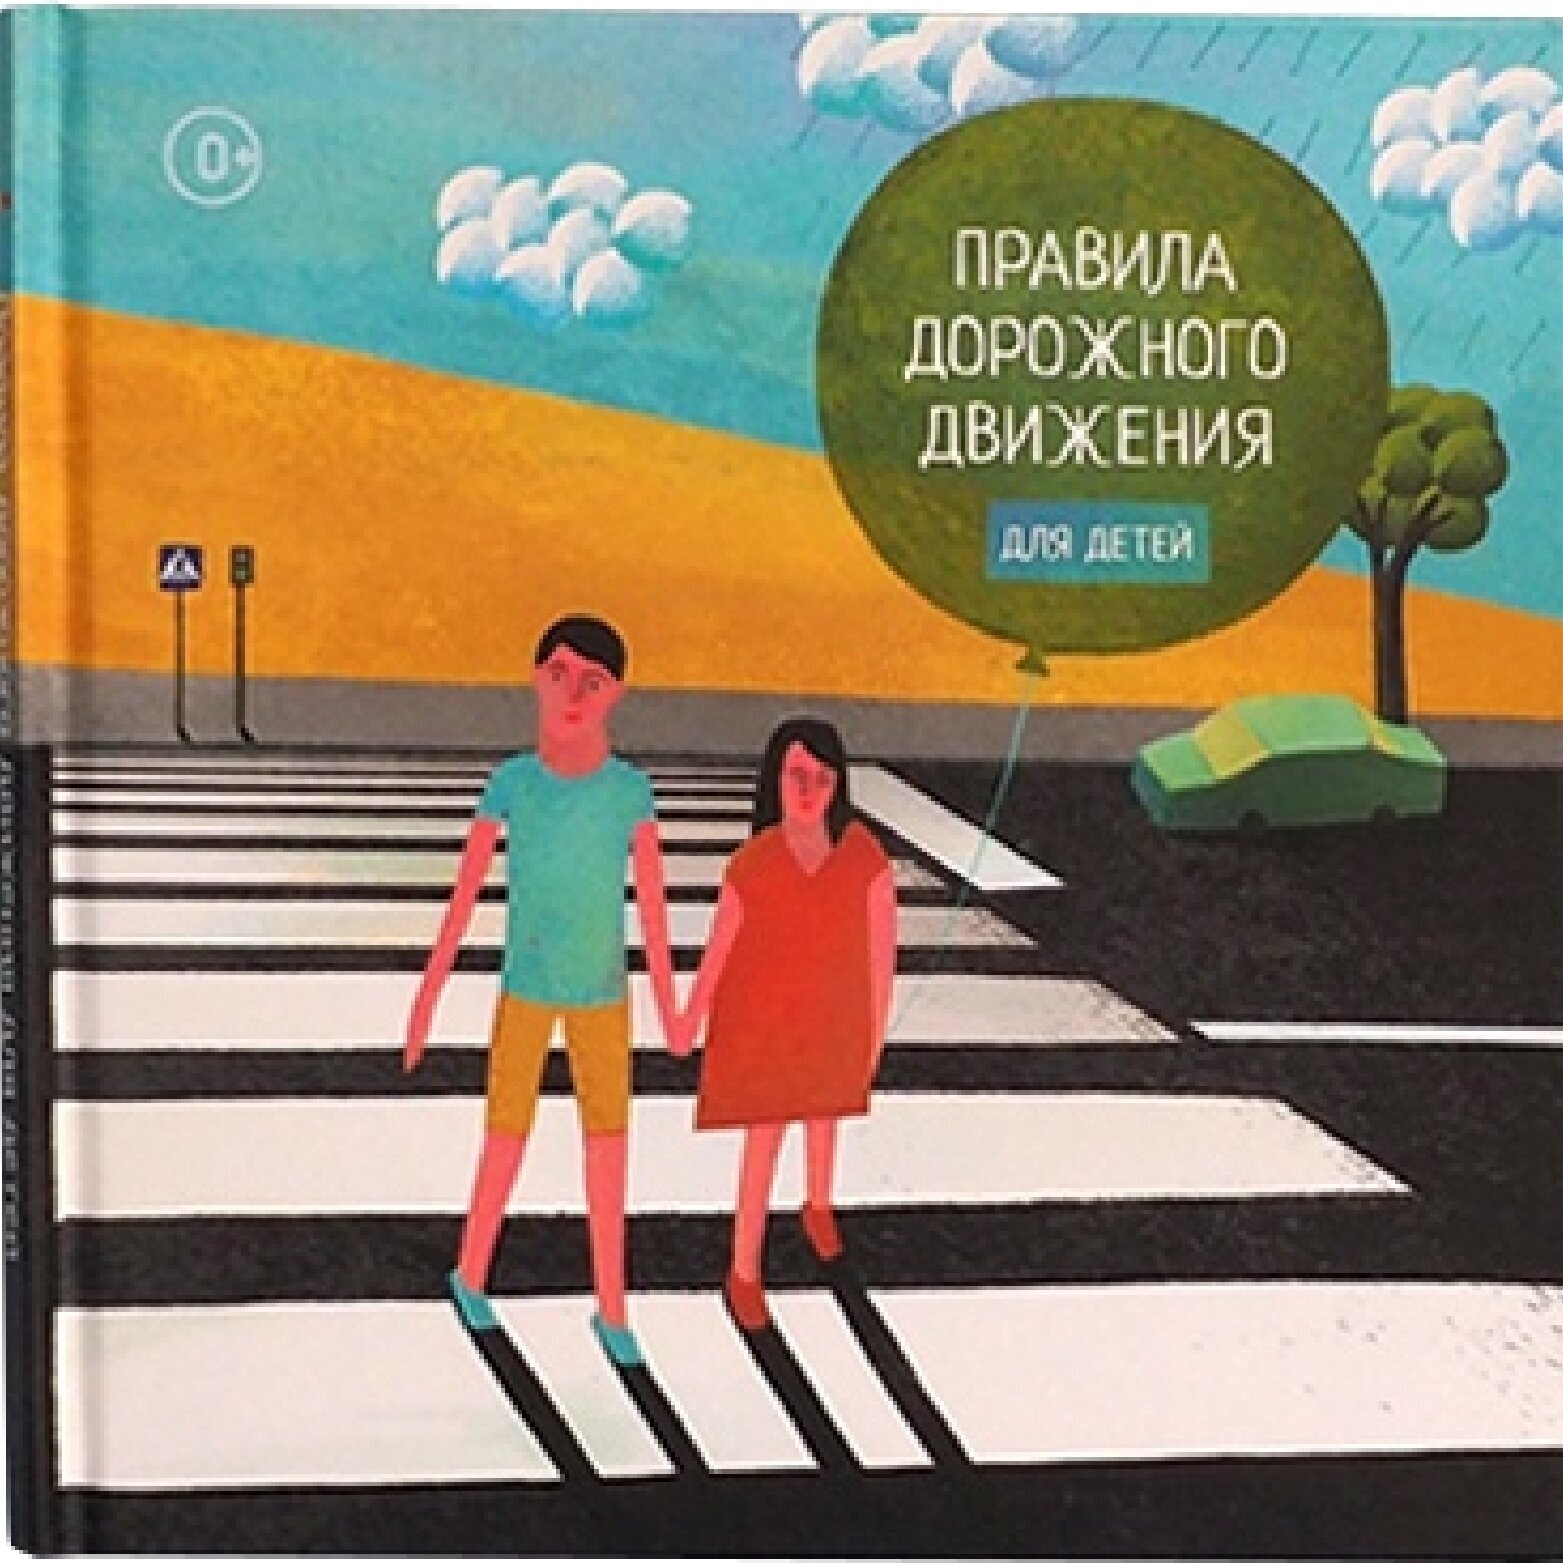 Обучающая развивающая книга игра Правила дорожного движения для детей